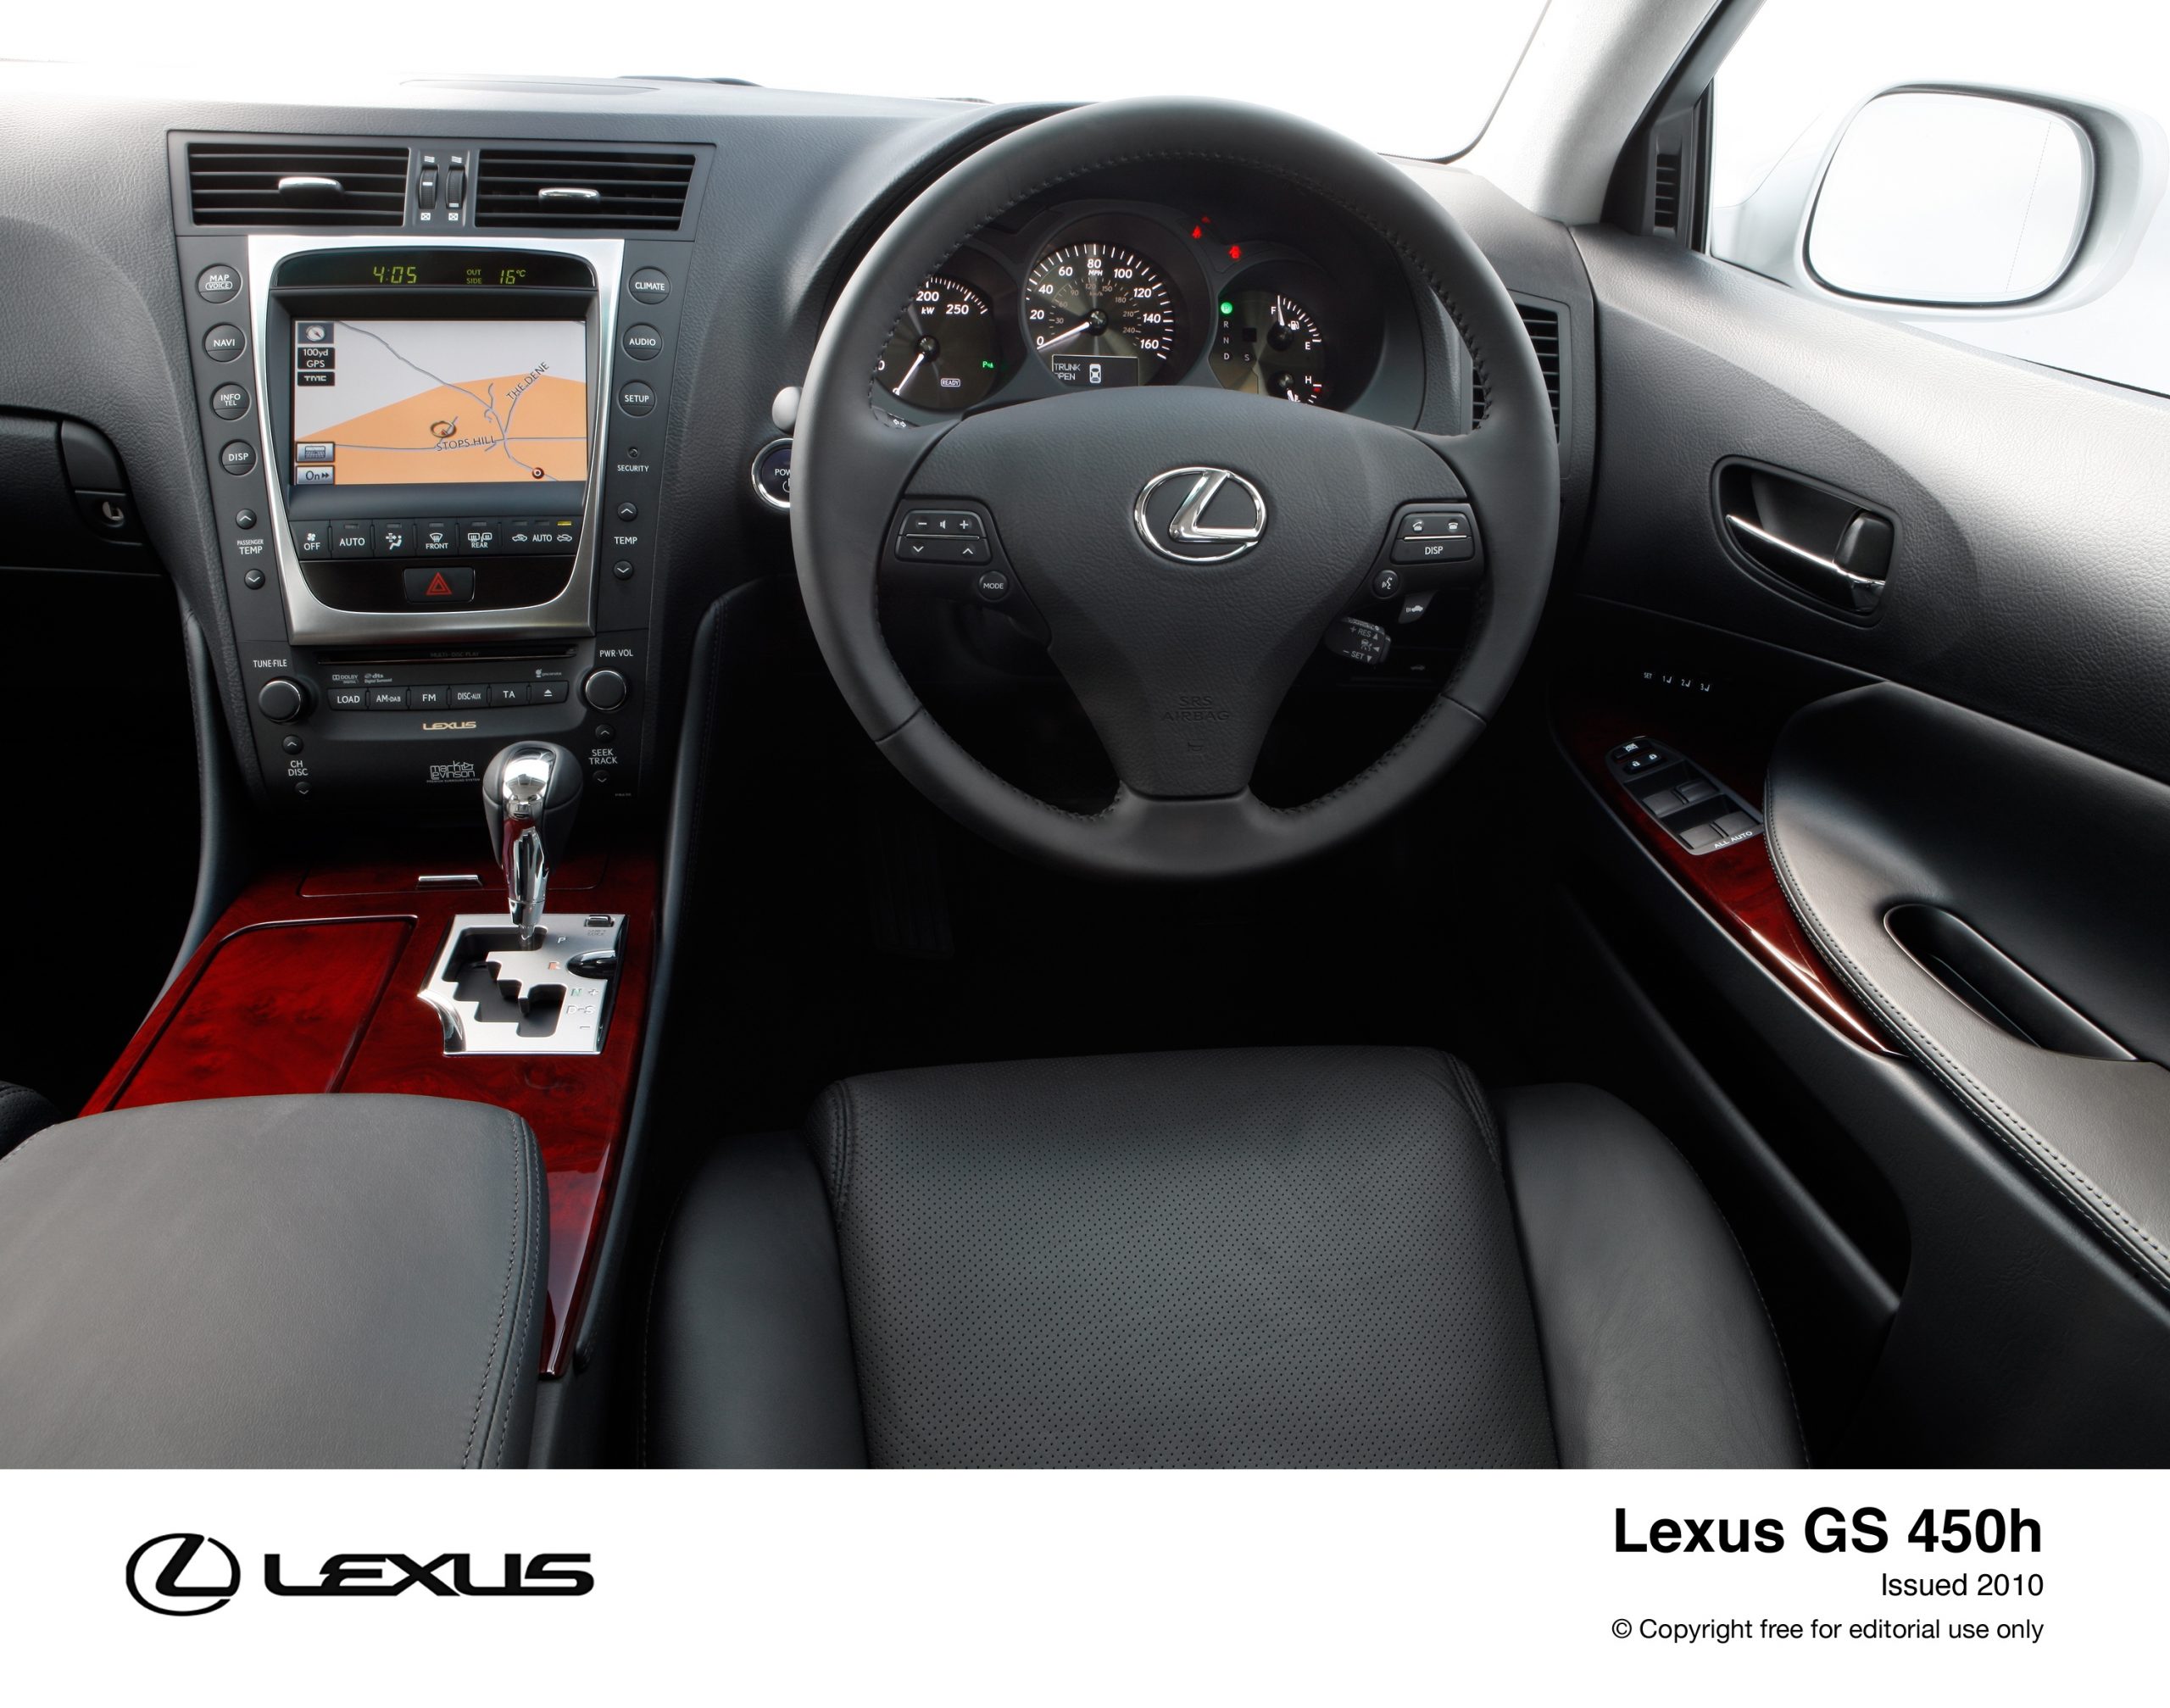 The 2010 Lexus GS 450h Lexus Media Site